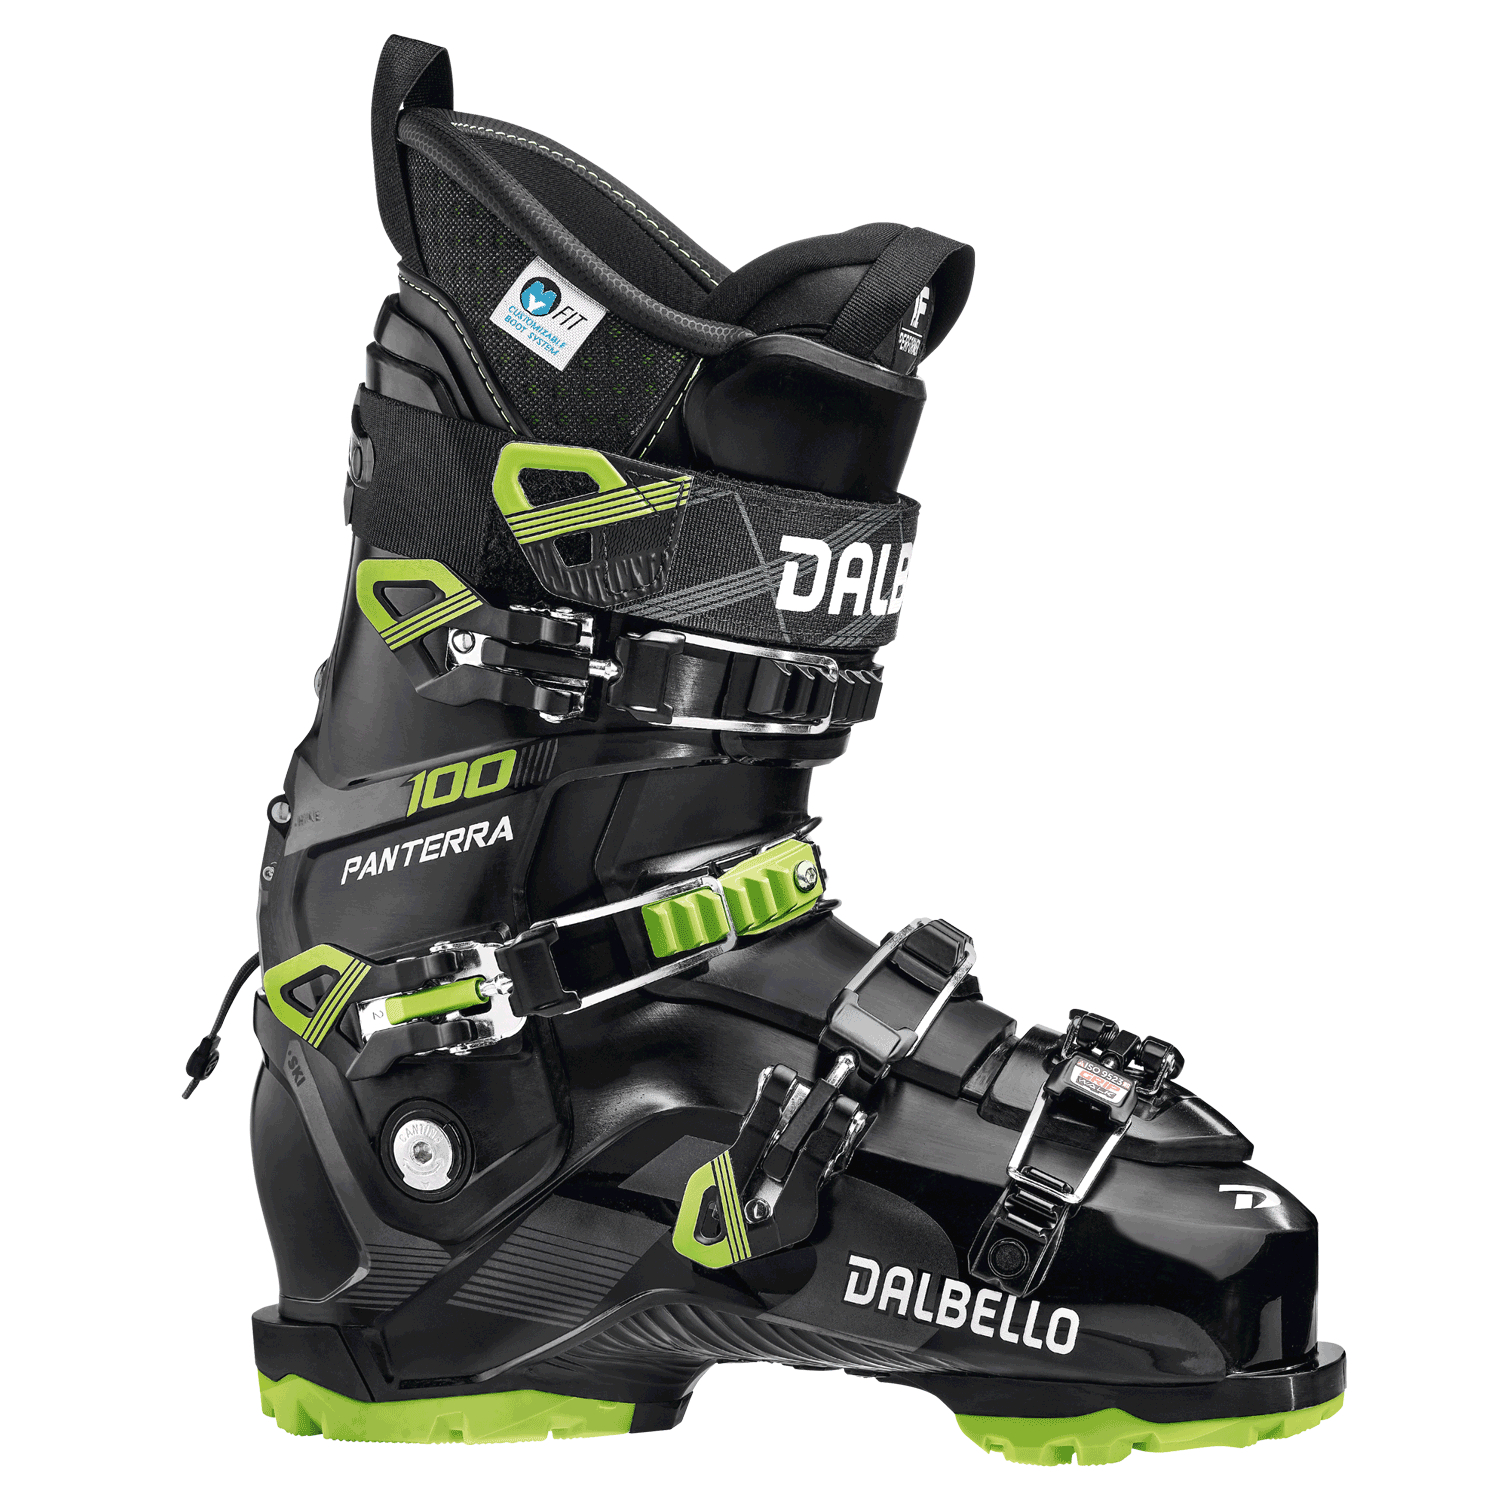 Цена универсальные лыжные ботинки Dalbello Panterra 100 GW Black/Lime (285) в Киеве